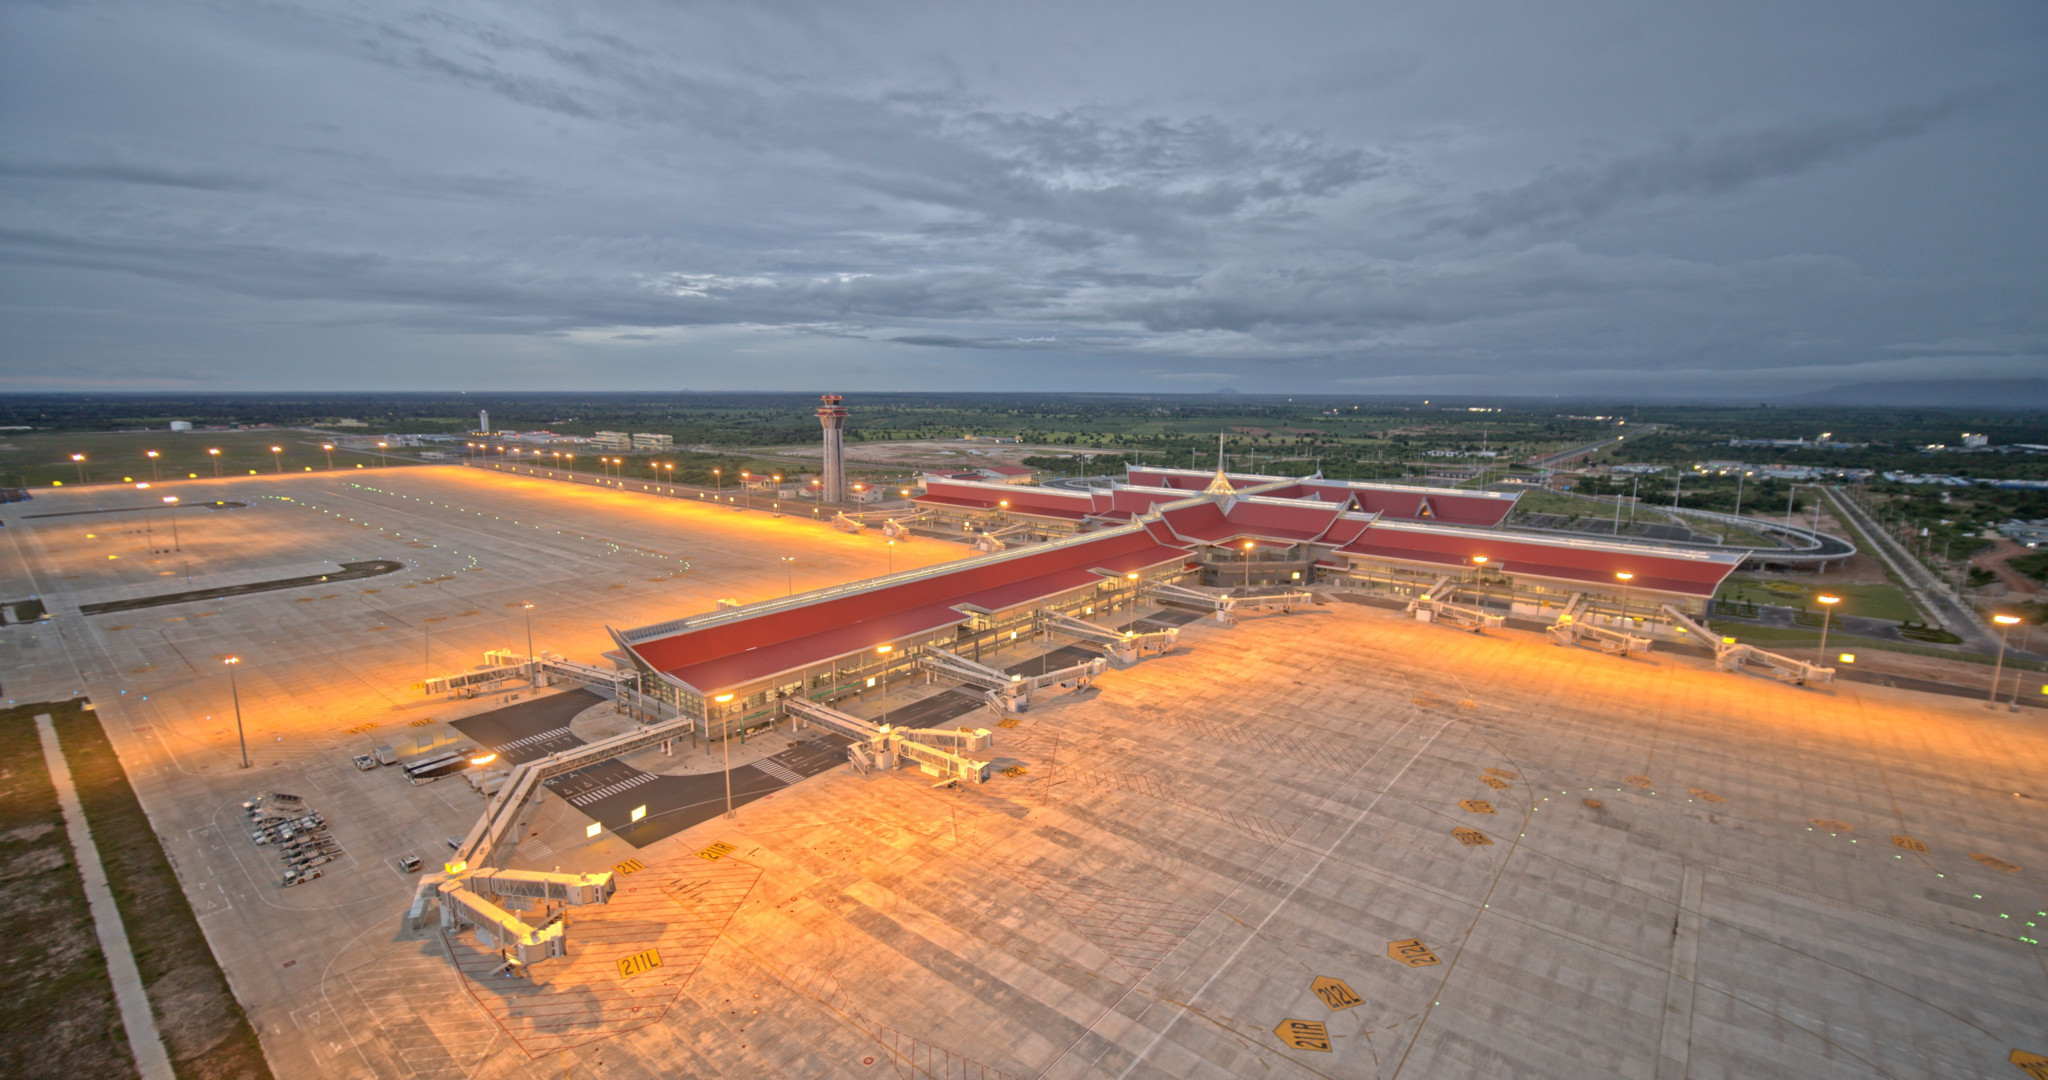 Le coût du nouvel aéroport de Siem Reap, qui s’étale sur 700 hectares, est estimé à 1,1 milliard de dollars. Il a été financé par des investisseurs chinois.